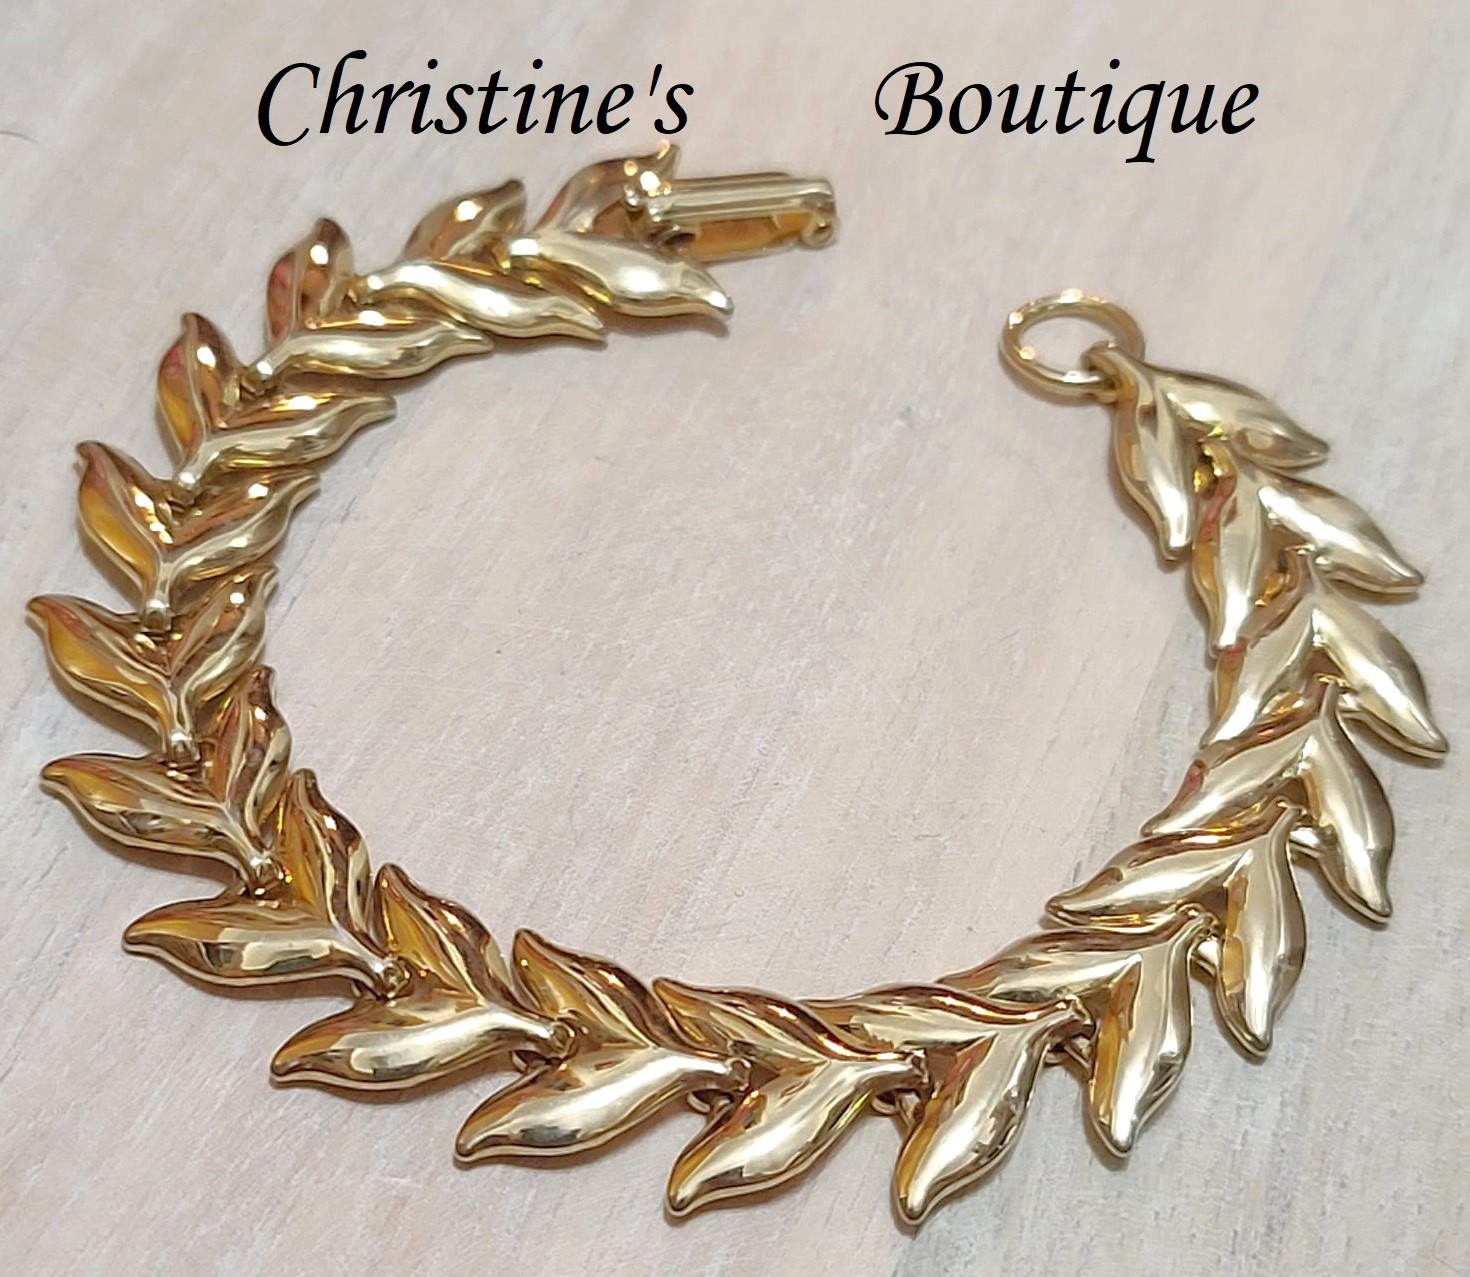 Vintage goldtone bracelet, link style with leaf motif design